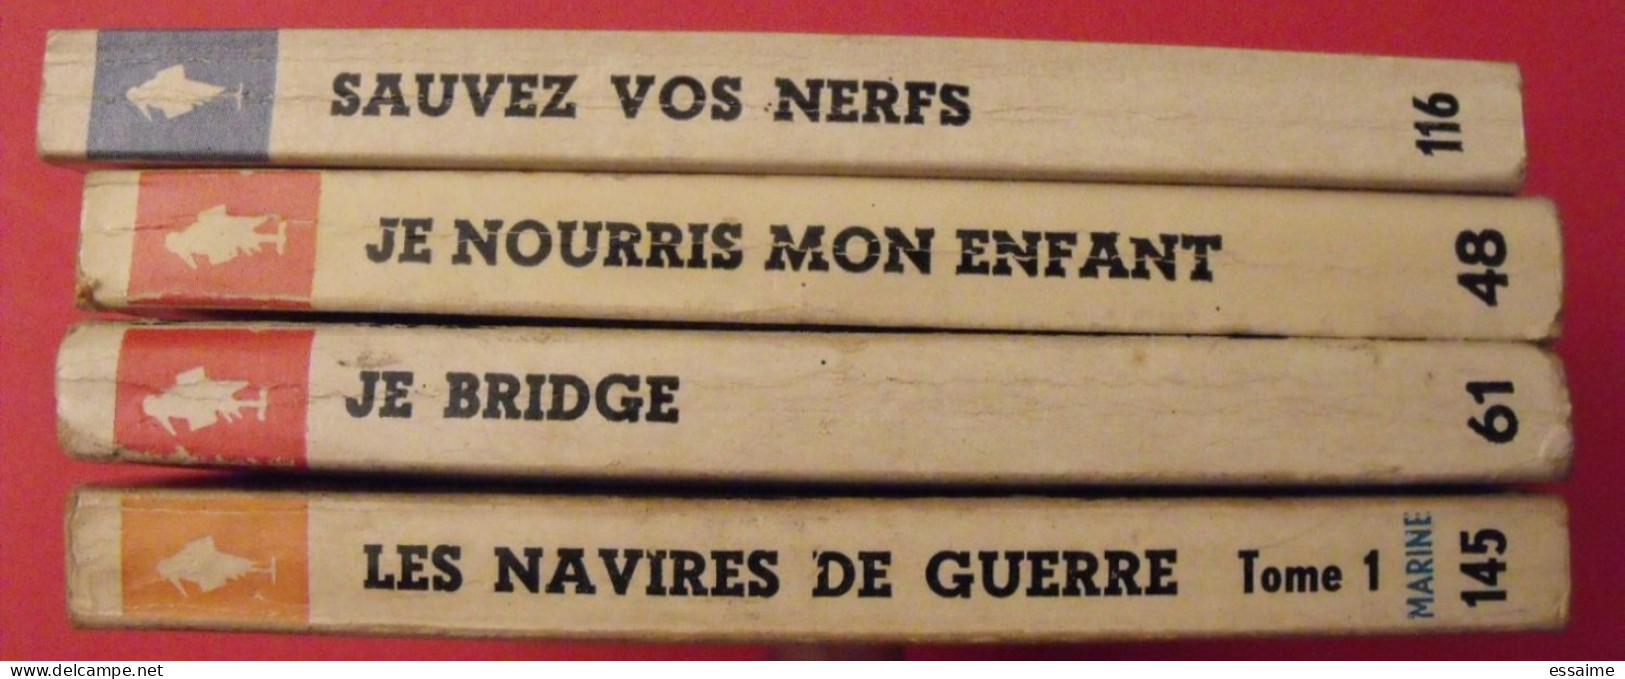 Lot De 4 Marabout Flash 1960-63. Navires De Guerre I Je Bridge Nourris Mon Enfant Sauvez Vos Nerfs - Paquete De Libros